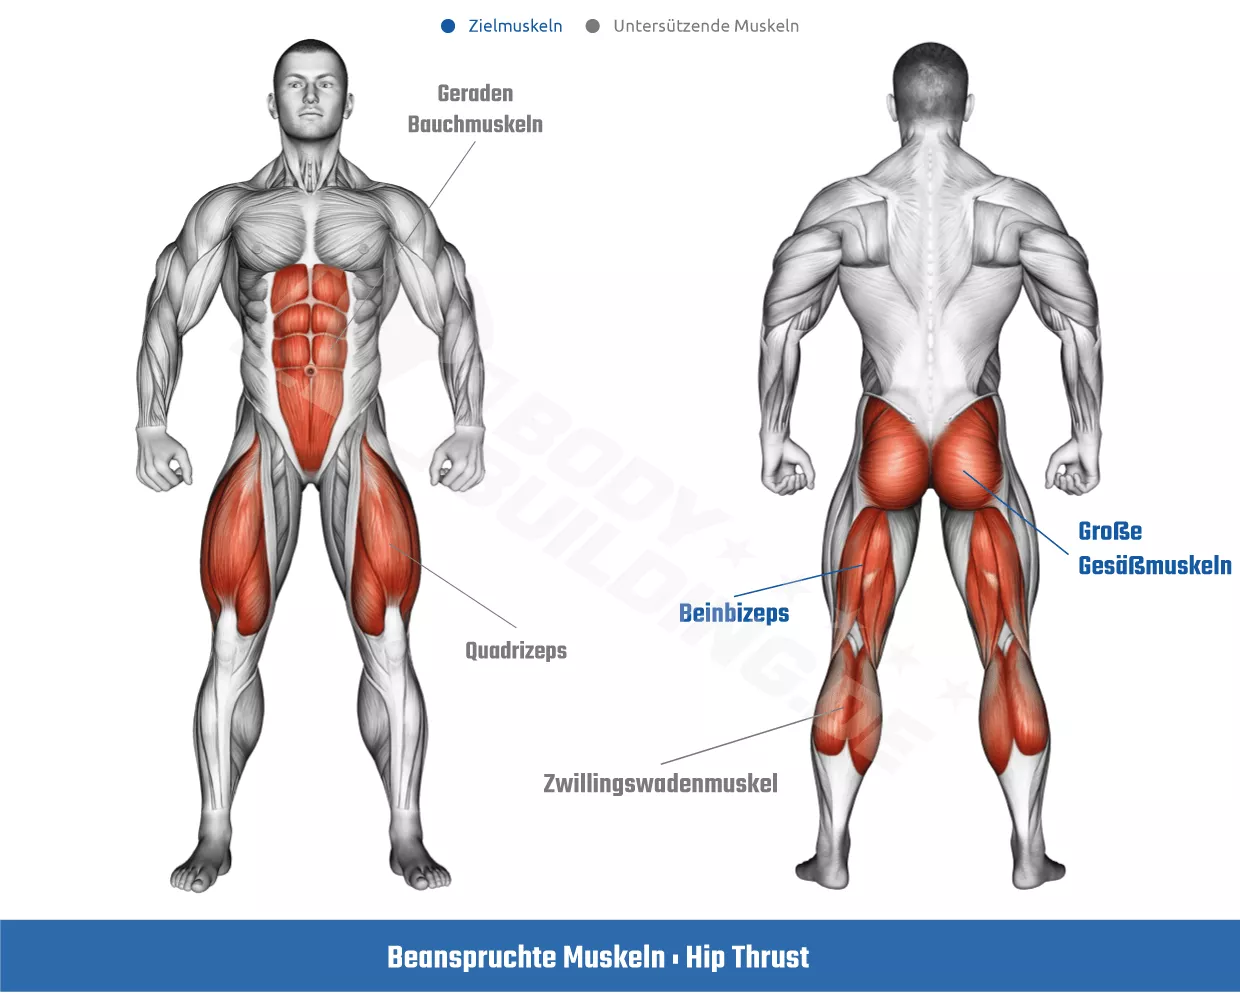 Beanspruchte Muskeln bei der Hip Thrust Übung